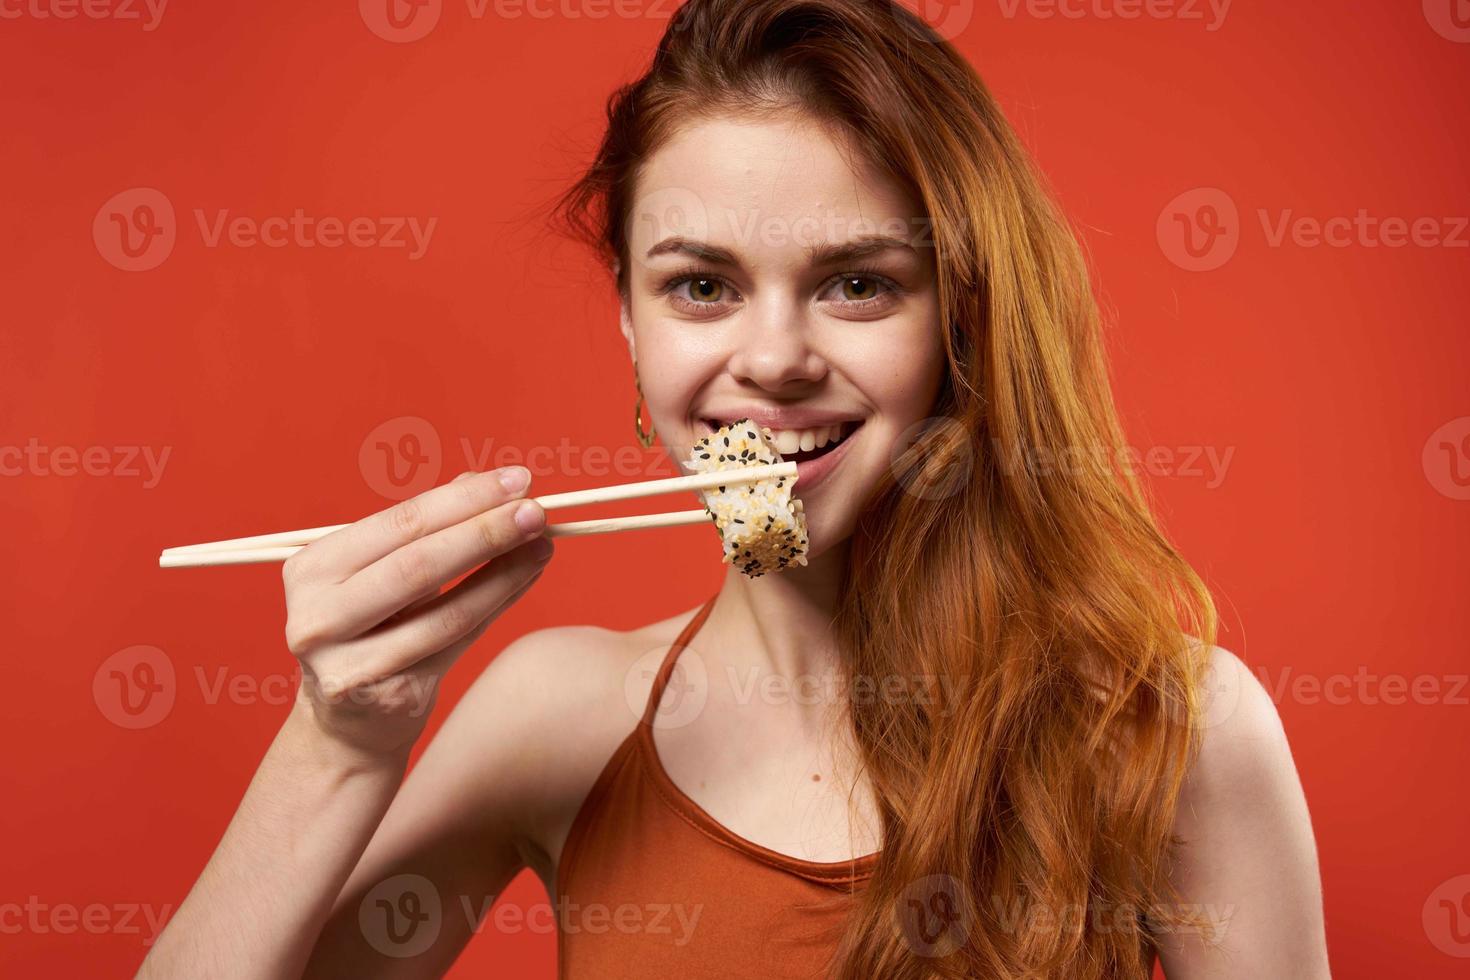 woman in red t shirt chopsticks sushi asian food photo